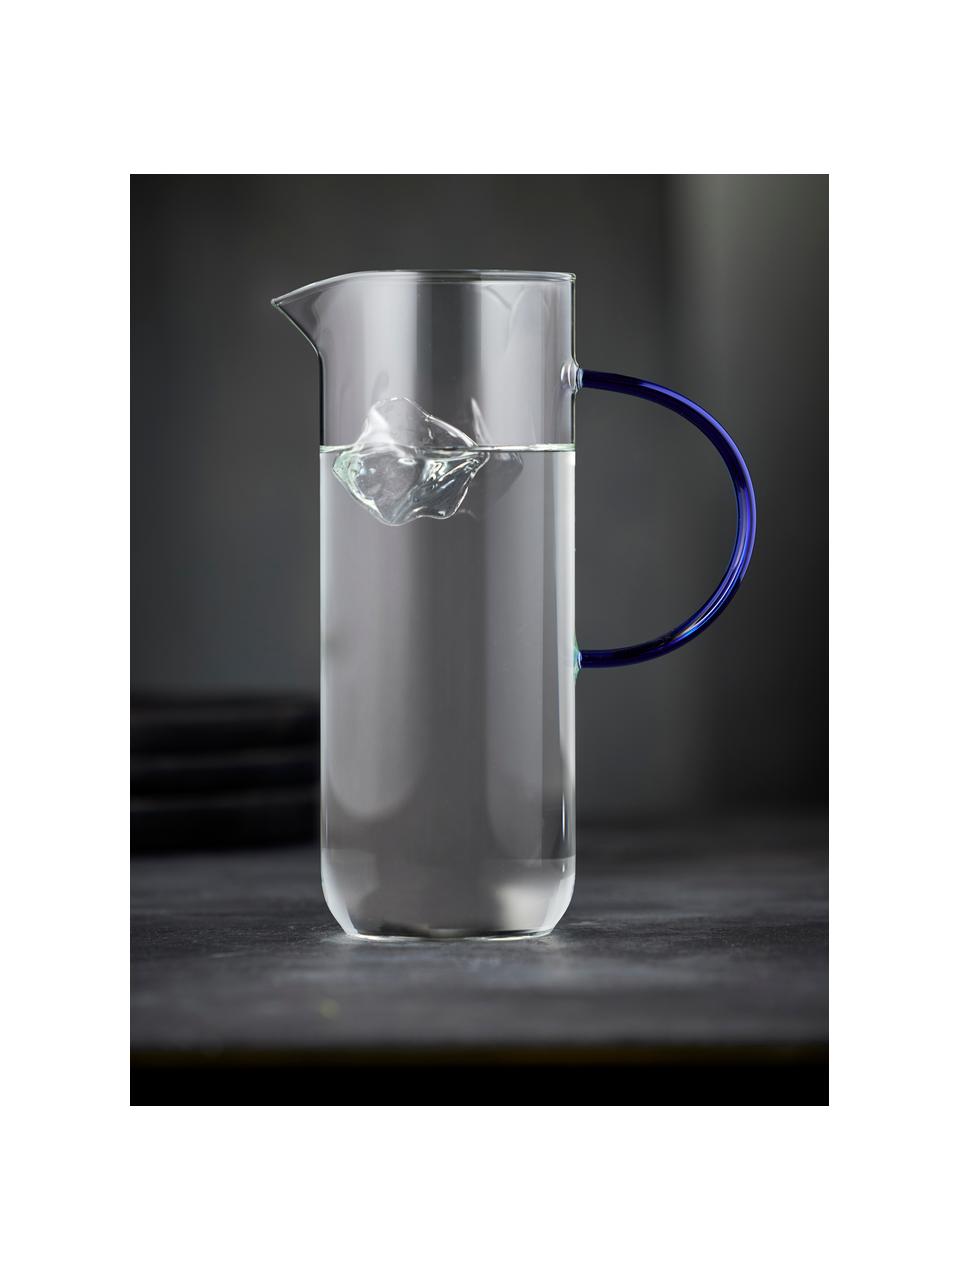 Wasserkaraffe Torino aus Borosilikatglas, 1.1 L, Borosilikatglas

Entdecke die Vielseitigkeit von Borosilikatglas für Dein Zuhause! Borosilikatglas ist ein hochwertiges, zuverlässiges und robustes Material. Es zeichnet sich durch seine aussergewöhnliche Hitzebeständigkeit aus und ist daher ideal für Deinen heissen Tee oder Kaffee. Im Vergleich zu herkömmlichem Glas ist Borosilikatglas widerstandsfähiger gegen Brüche und Risse und somit ein sicherer Begleiter in Deinem Zuhause., Transparent, Royalblau, 1.1 L